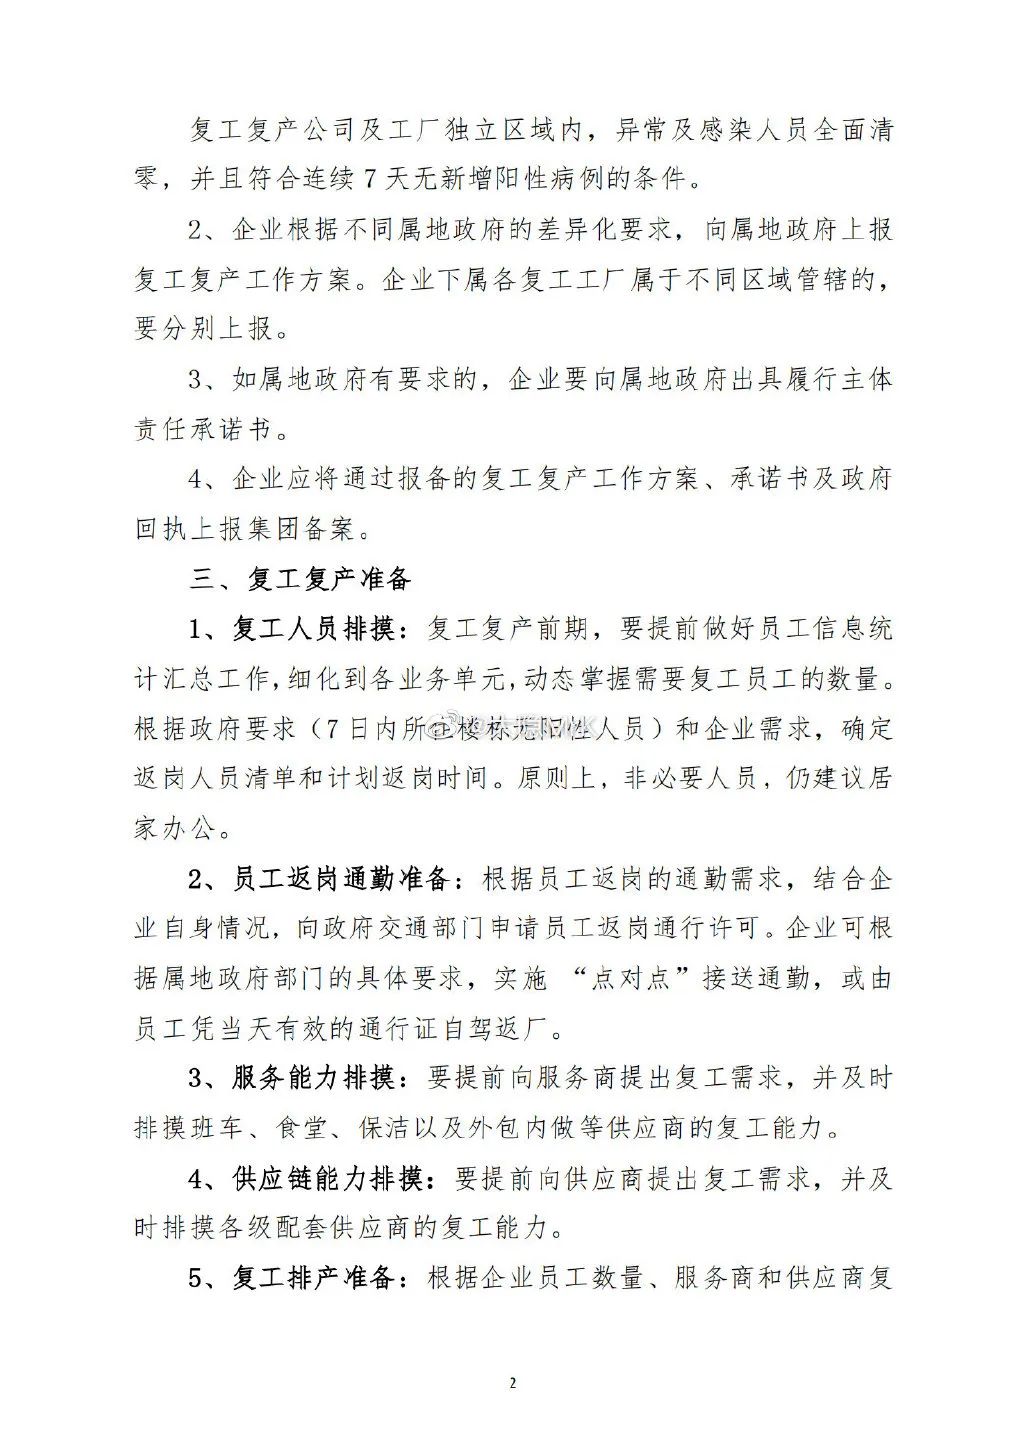 沸腾！上海大厂突传“复工复产”！打板九安医疗哭了 150亿砸天地板！